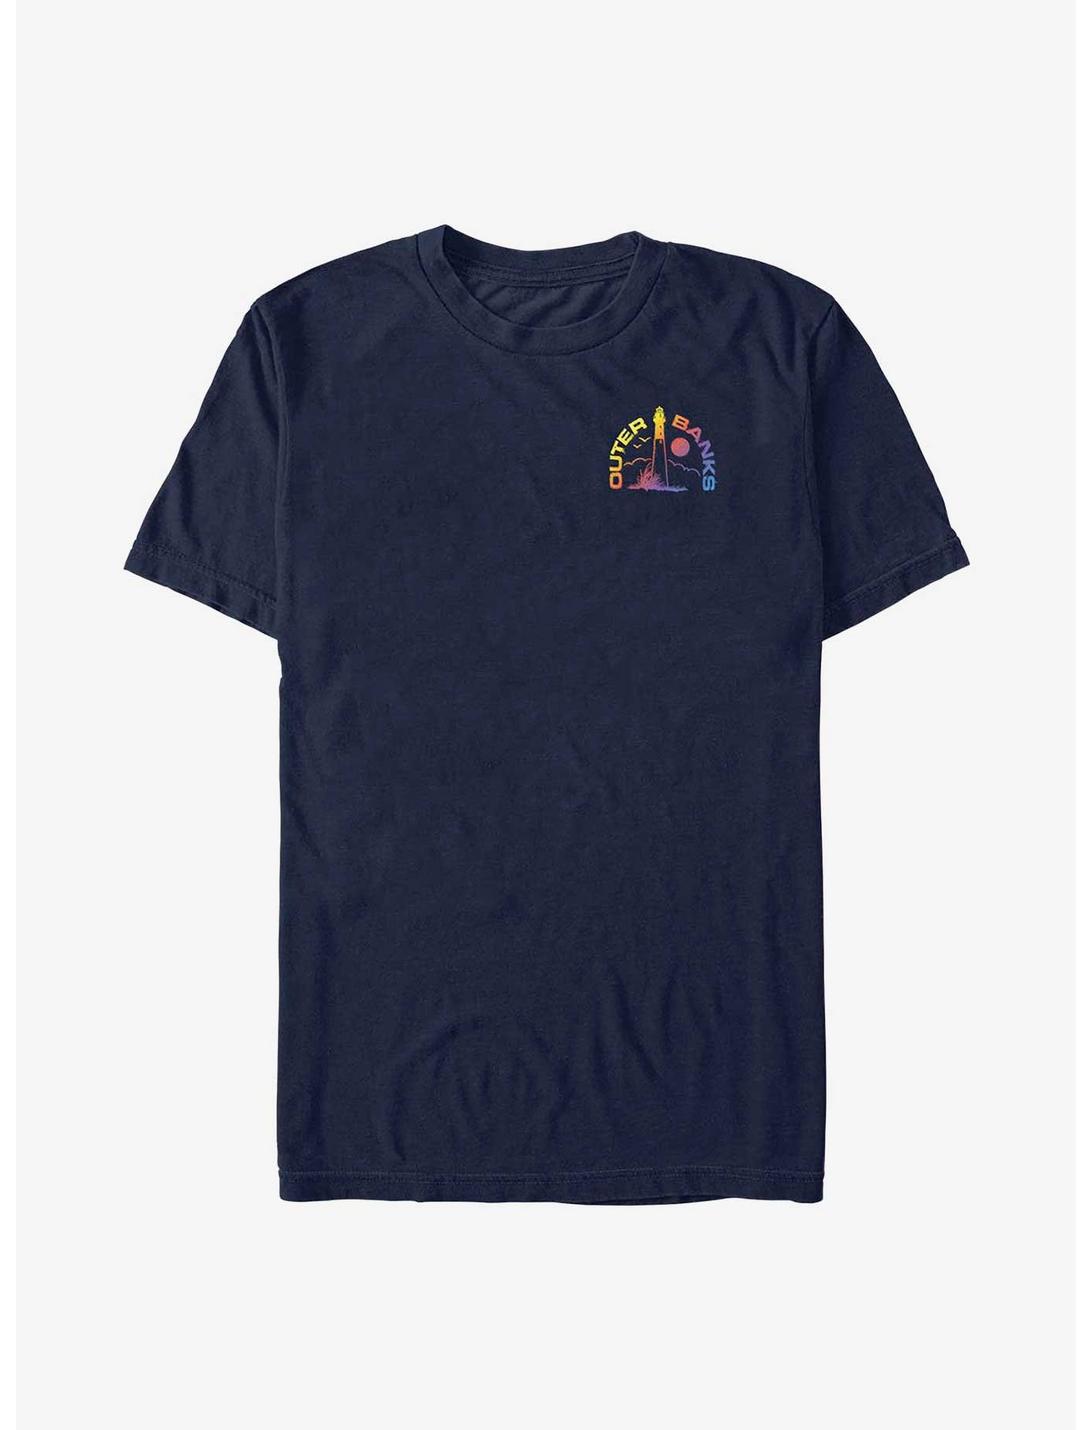 Outer Banks Lighthouse Pocket Logo T-Shirt, NAVY, hi-res